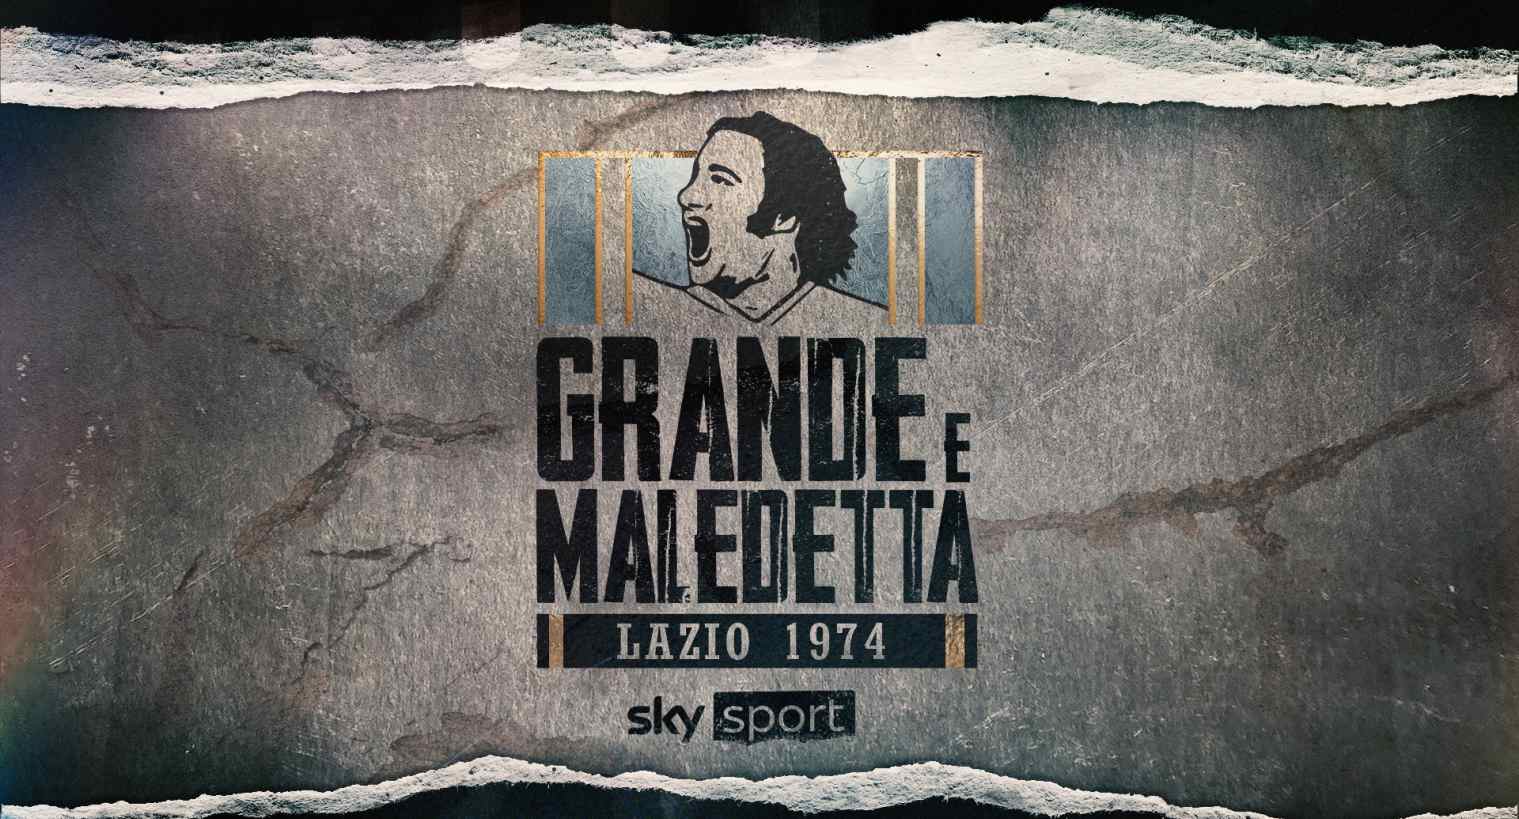 Foto - Sky Sport presenta 'Lazio 1974: grande e maledetta', storia epica calcio e controversie anni '70